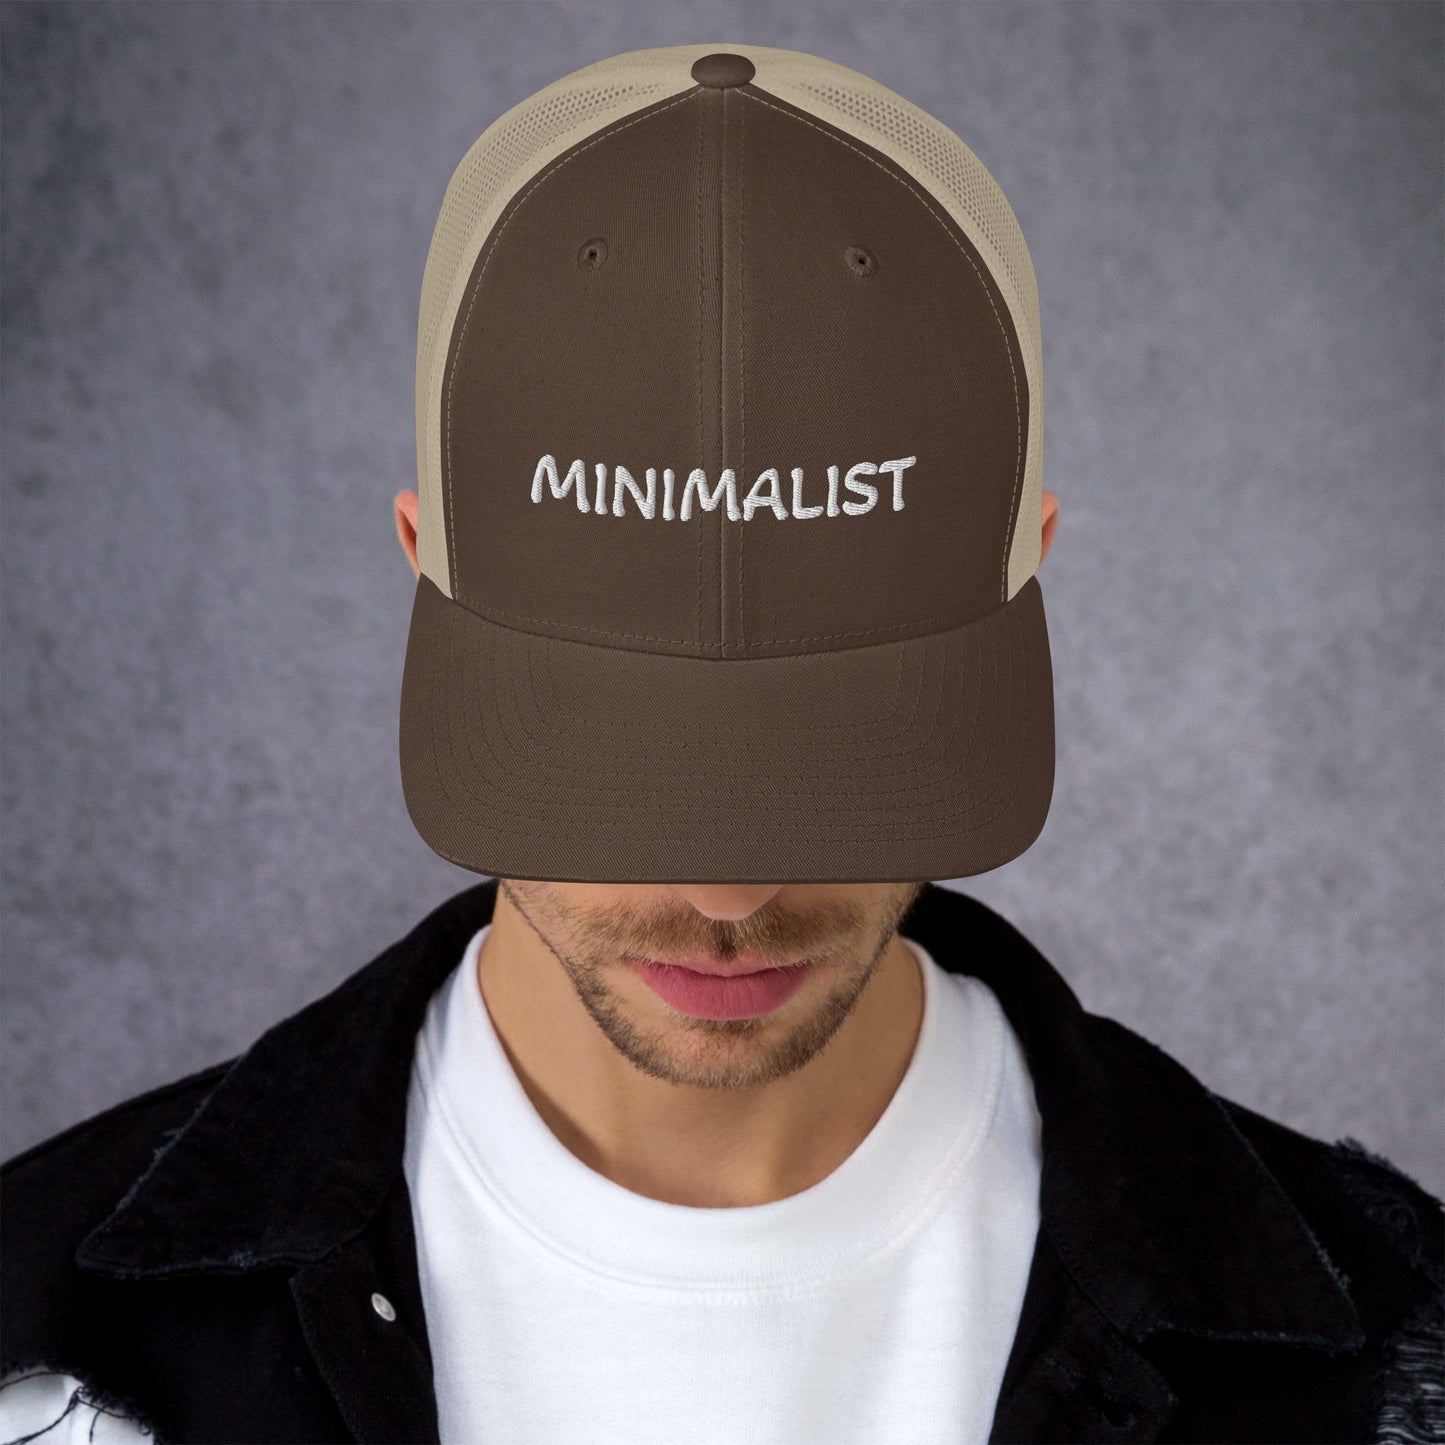 MINIMALIST Design - Embroidered Trucker Cap